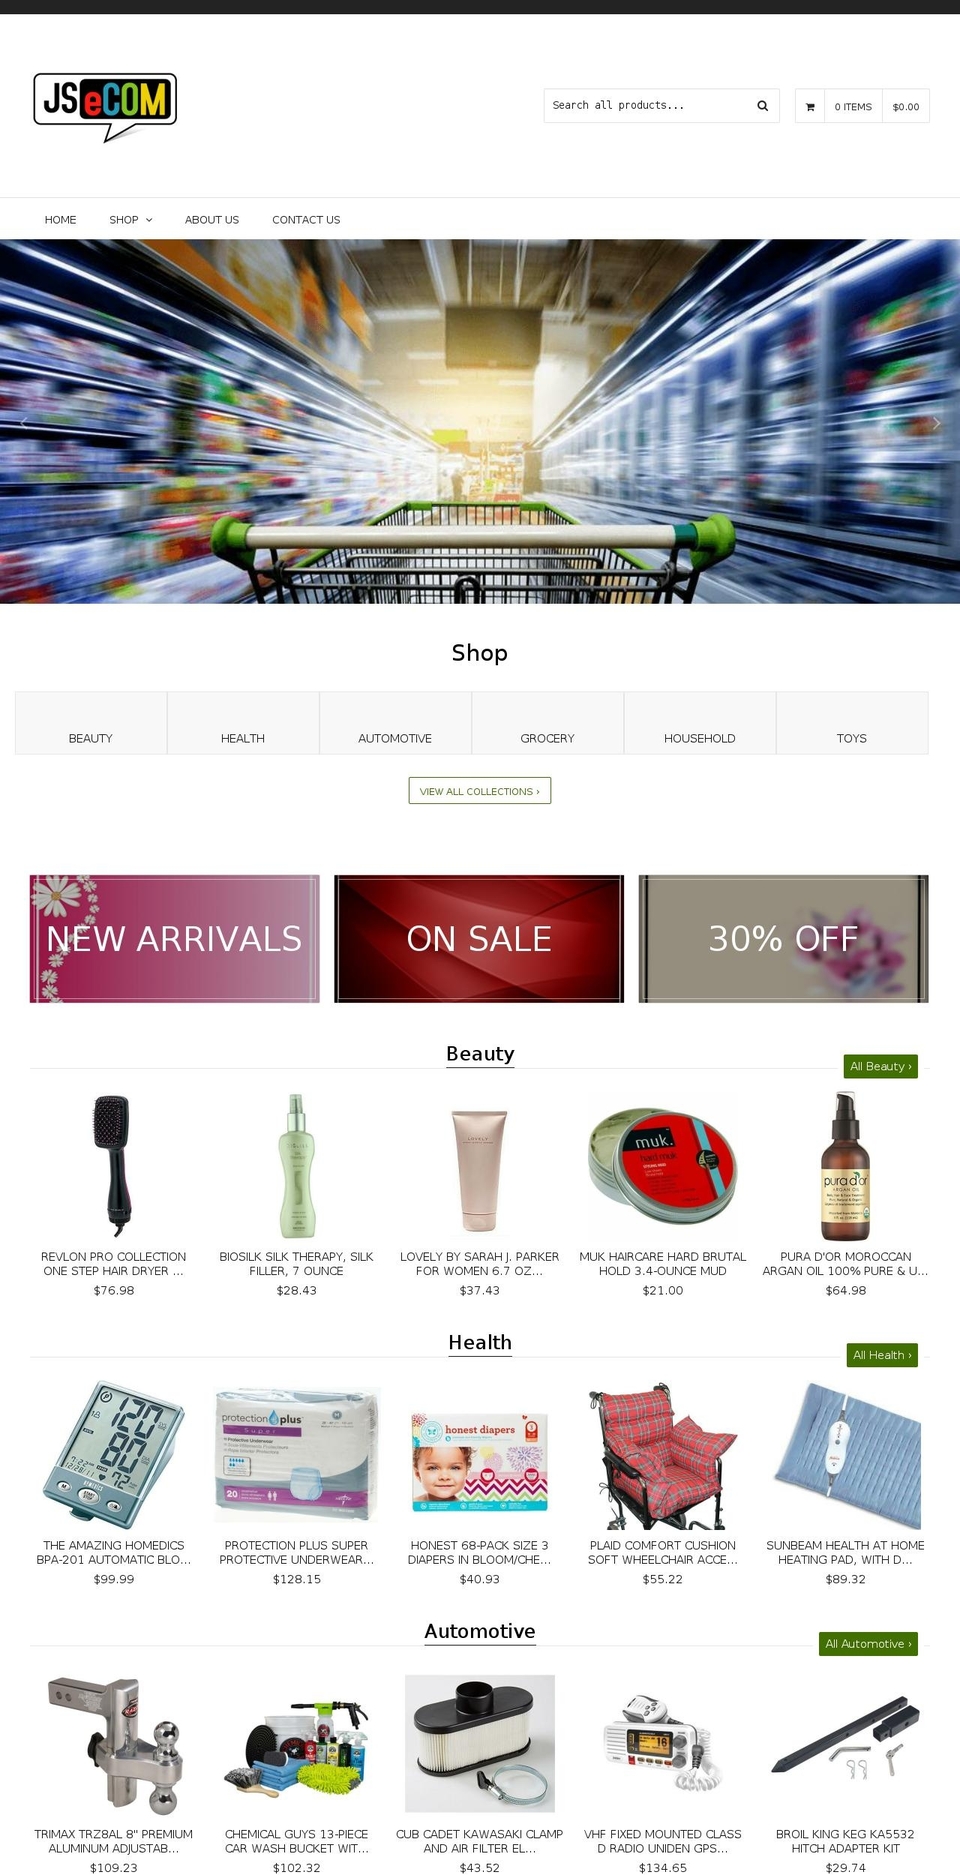 jsonlinestore.com shopify website screenshot